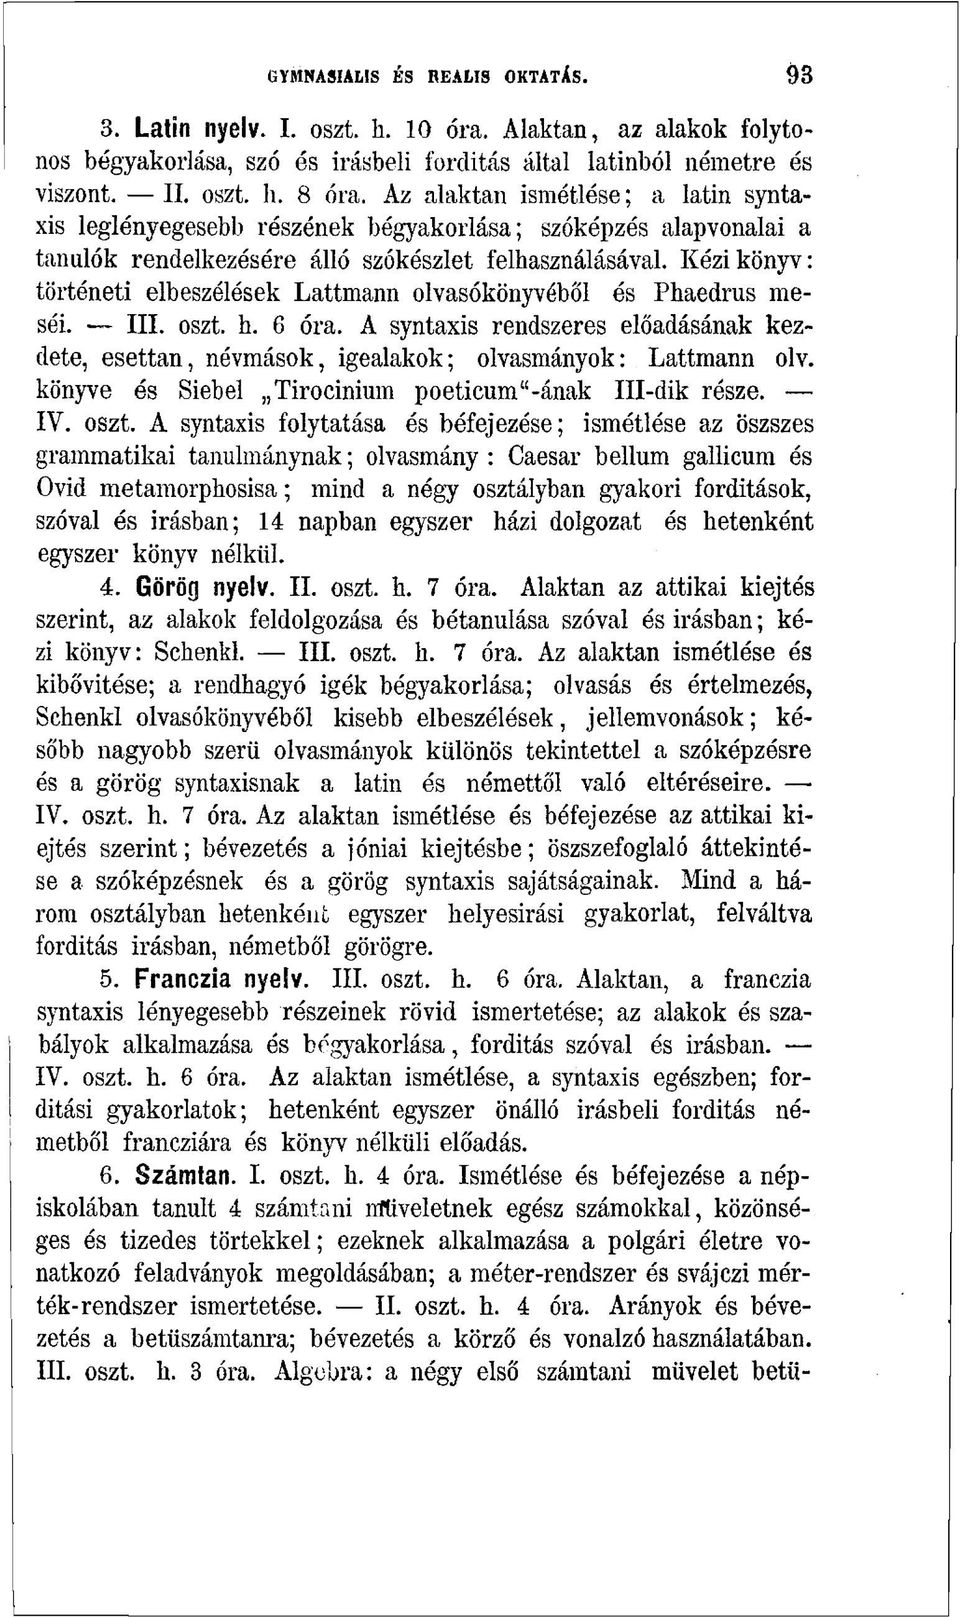 Kézikönyv: történeti elbeszélések Lattmann olvasókönyvéből és Phaedrus meséi. III. oszt. h. 6 óra. A syntaxis rendszeres előadásának kezdete, esettan, névmások, igealakok; olvasmányok: Lattmann olv.